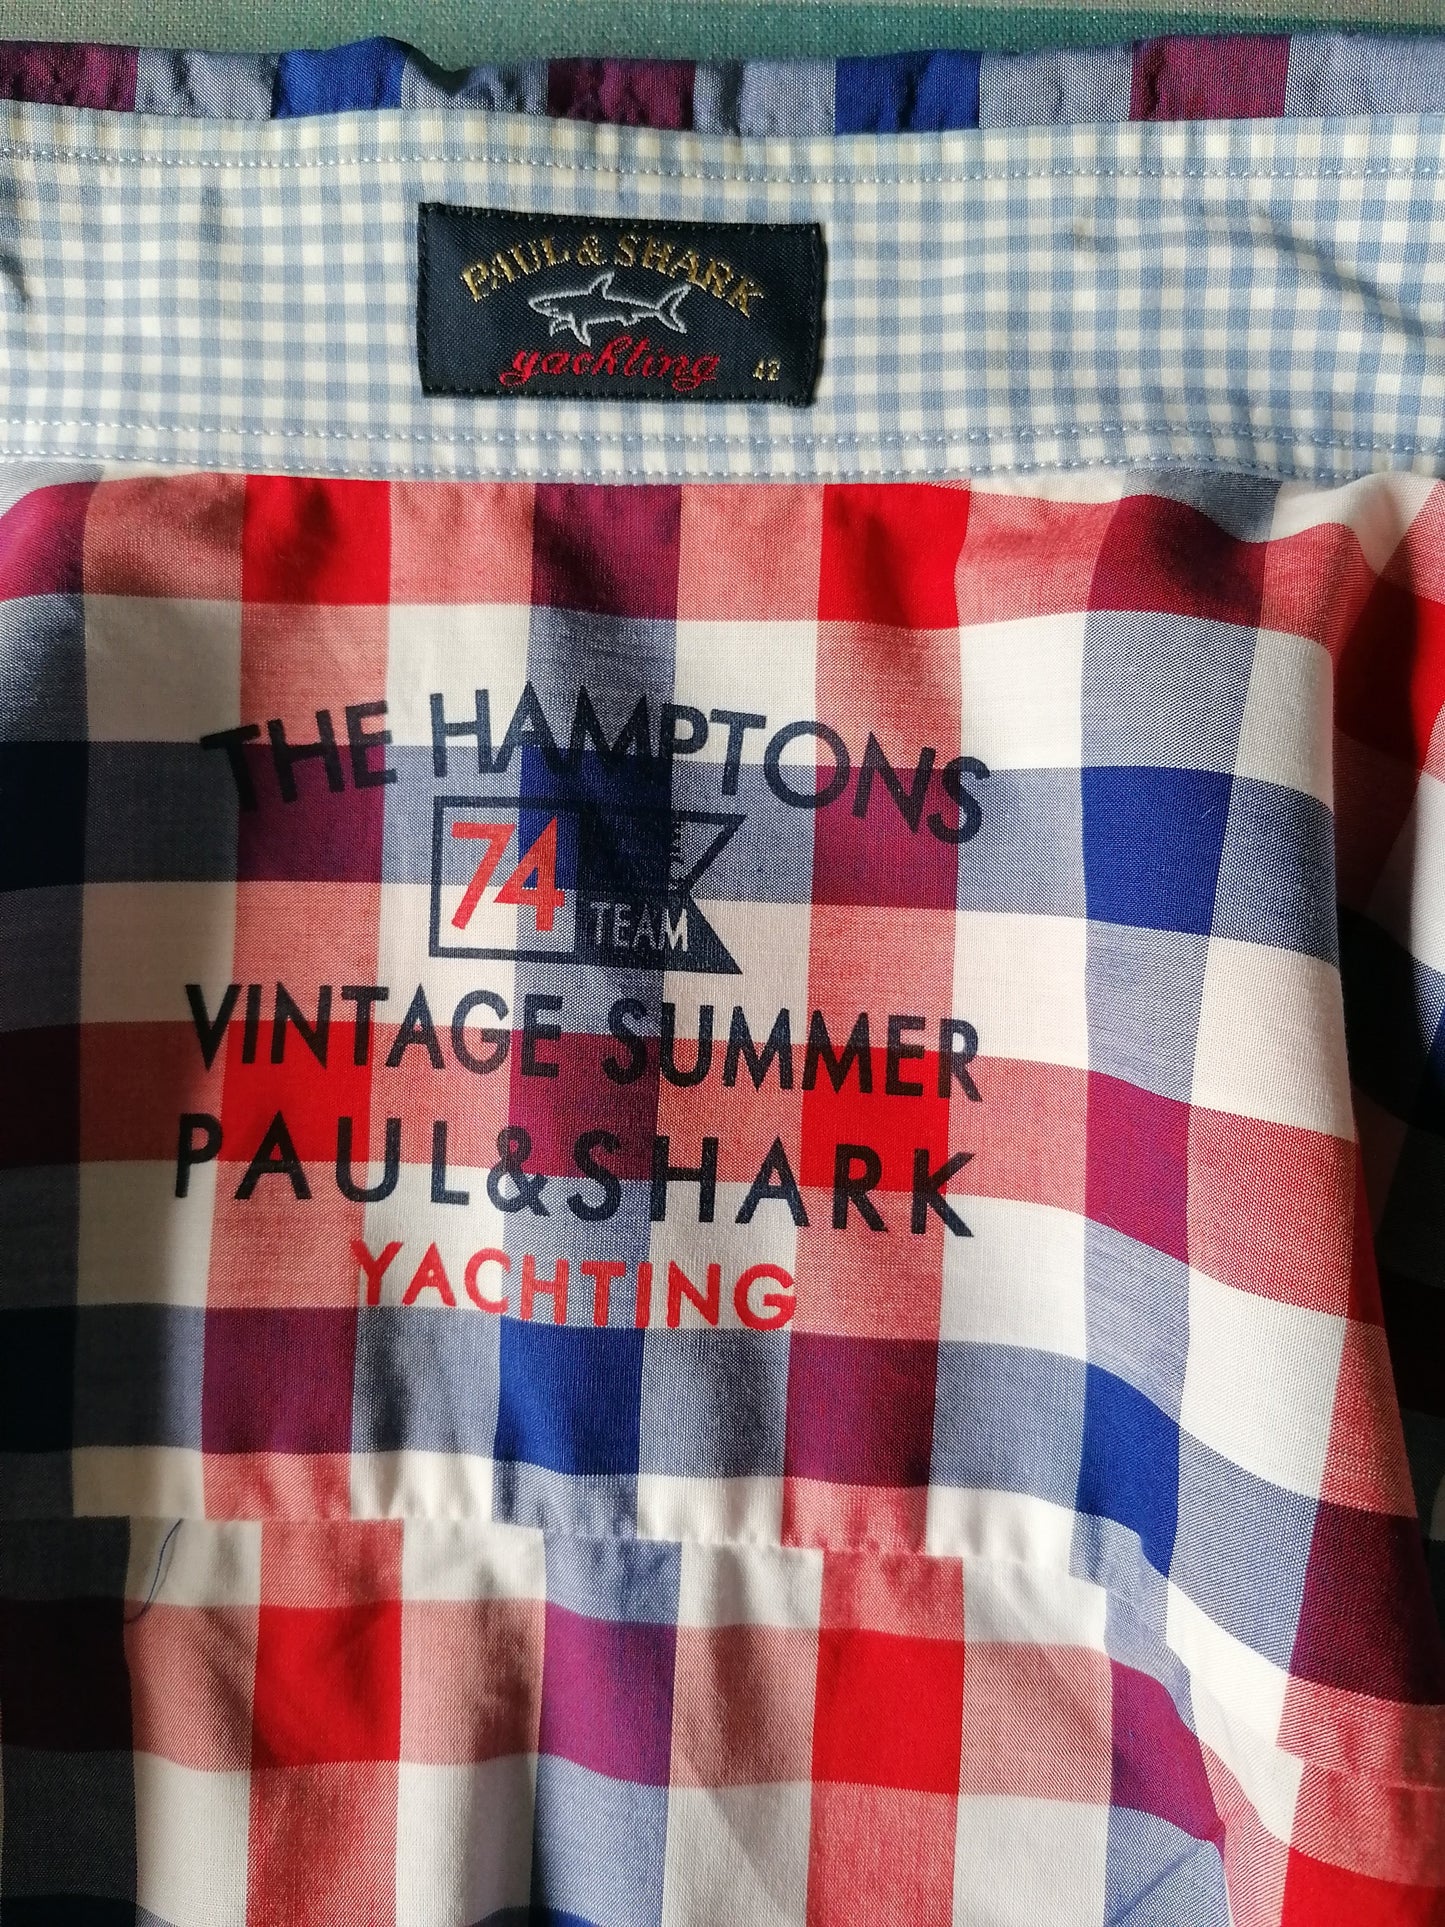 Camicia Paul & Shark. Blu bianco rosso a scacchi. Dimensioni 42 / L / XL